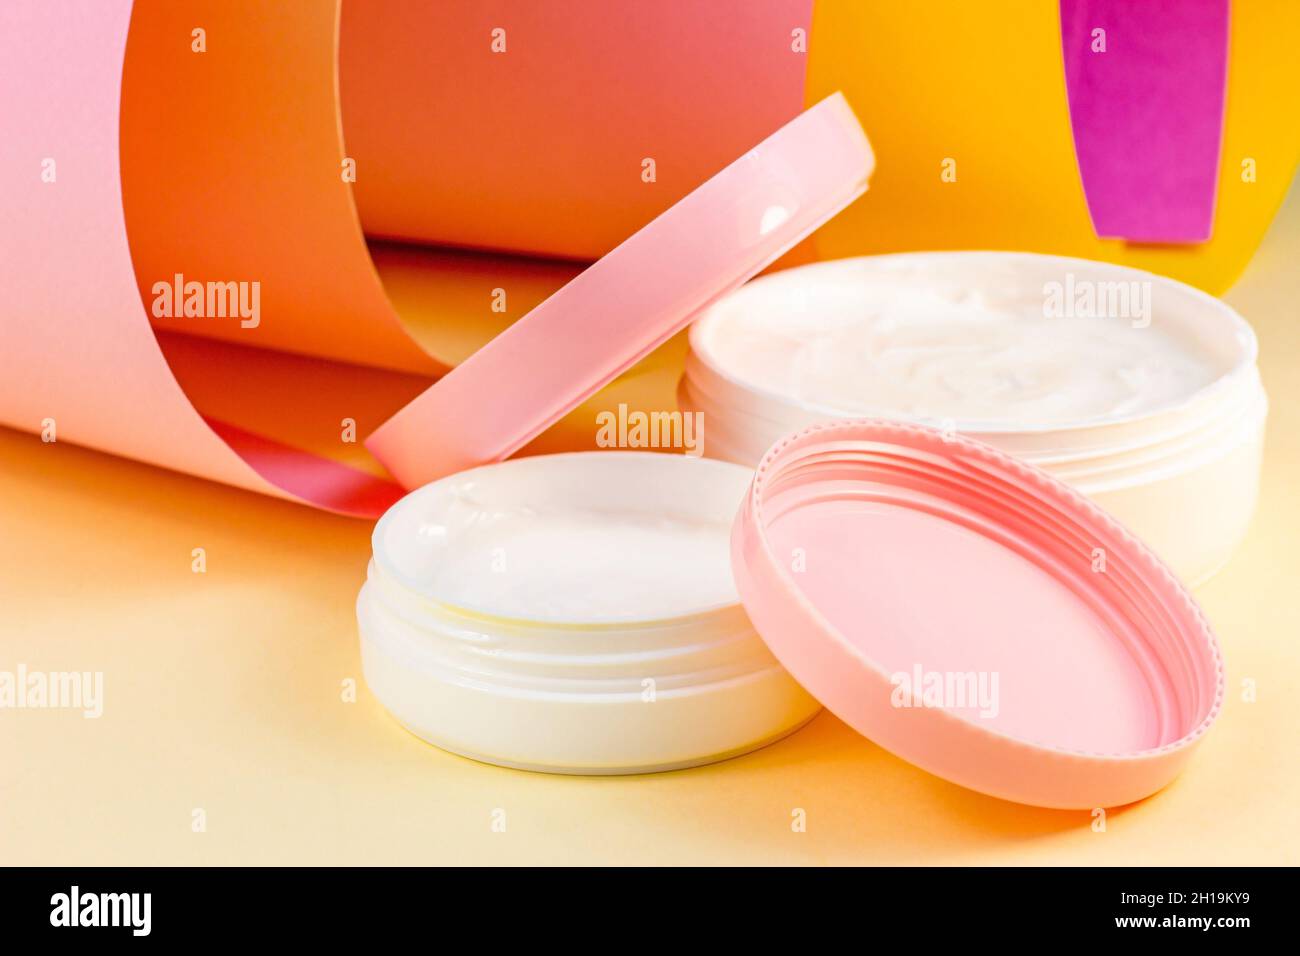 Weißer Kunststoff-Kosmetikbehälter für feuchtigkeitsspendende Creme als Nachbildung auf hellem rosa, orangen und gelben Hintergrund. Körper- und Hautpflege, Gesundheit, Wellnes Stockfoto